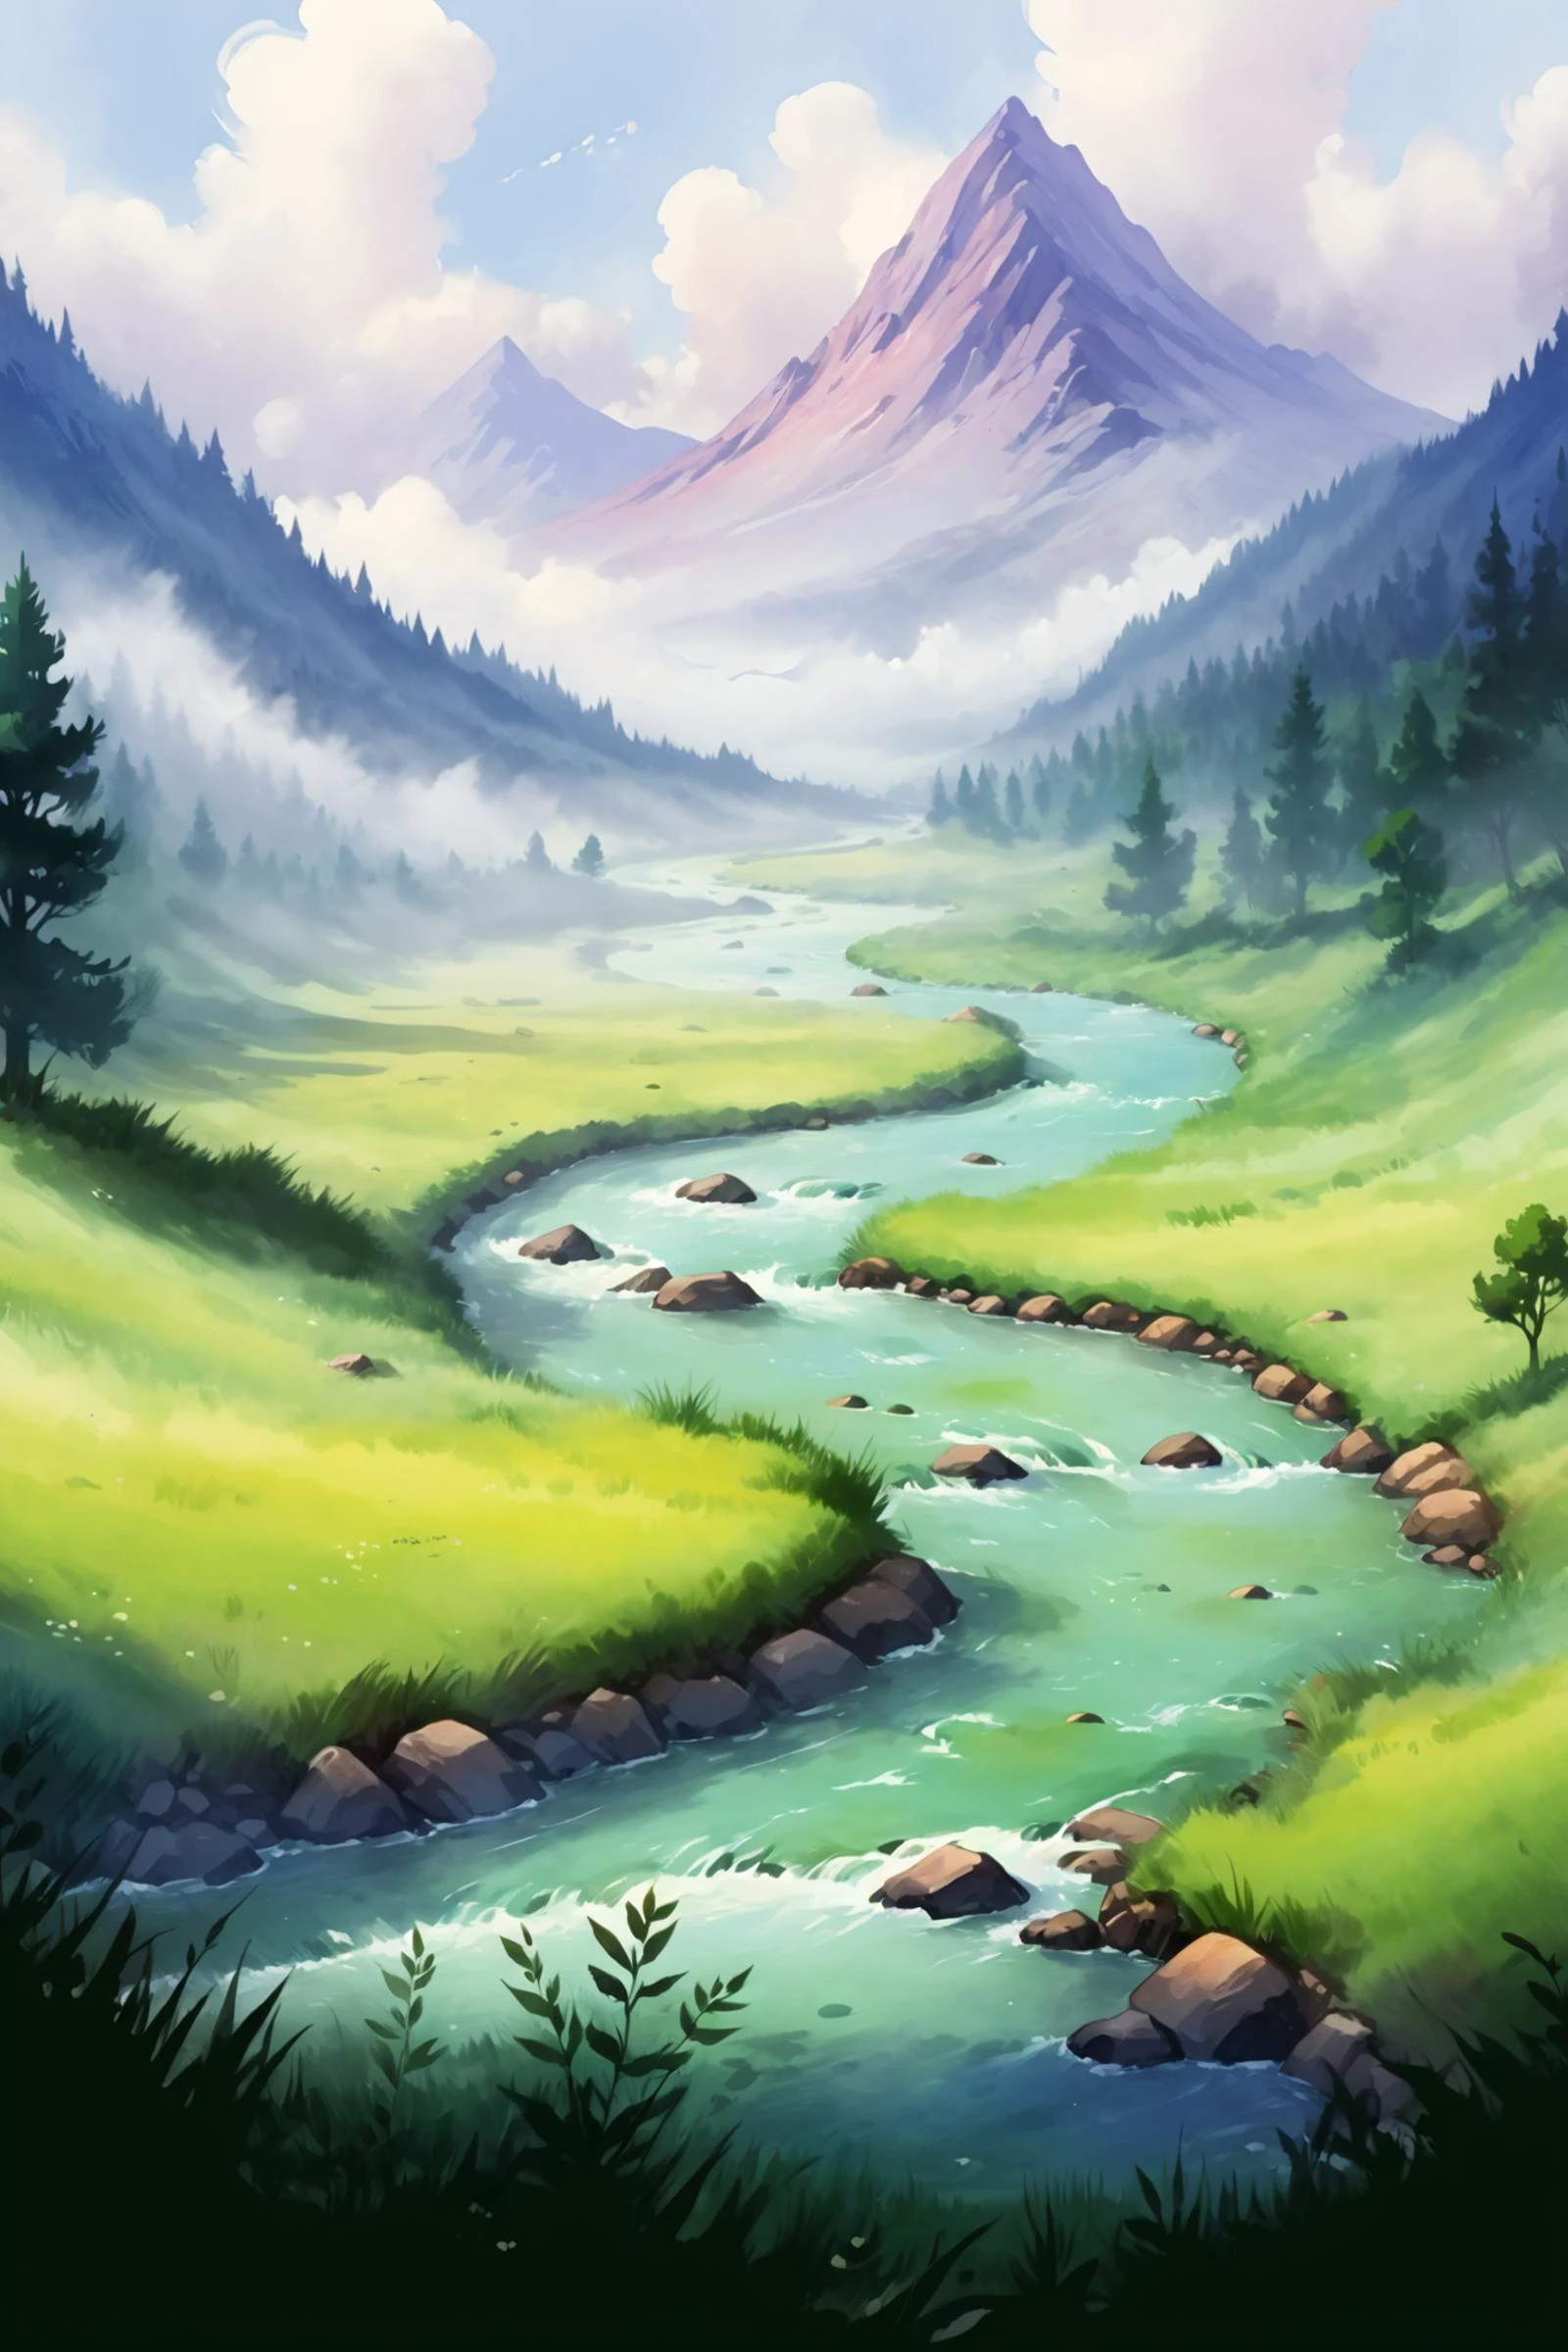 Cena do jogo 2D, desenho de pintura a óleo e aquarela de uma paisagem minimalista, rio, Prado, névoa, nuvens, montanha, árvore, floresta, (Obra de arte:1.2), melhor qualidade